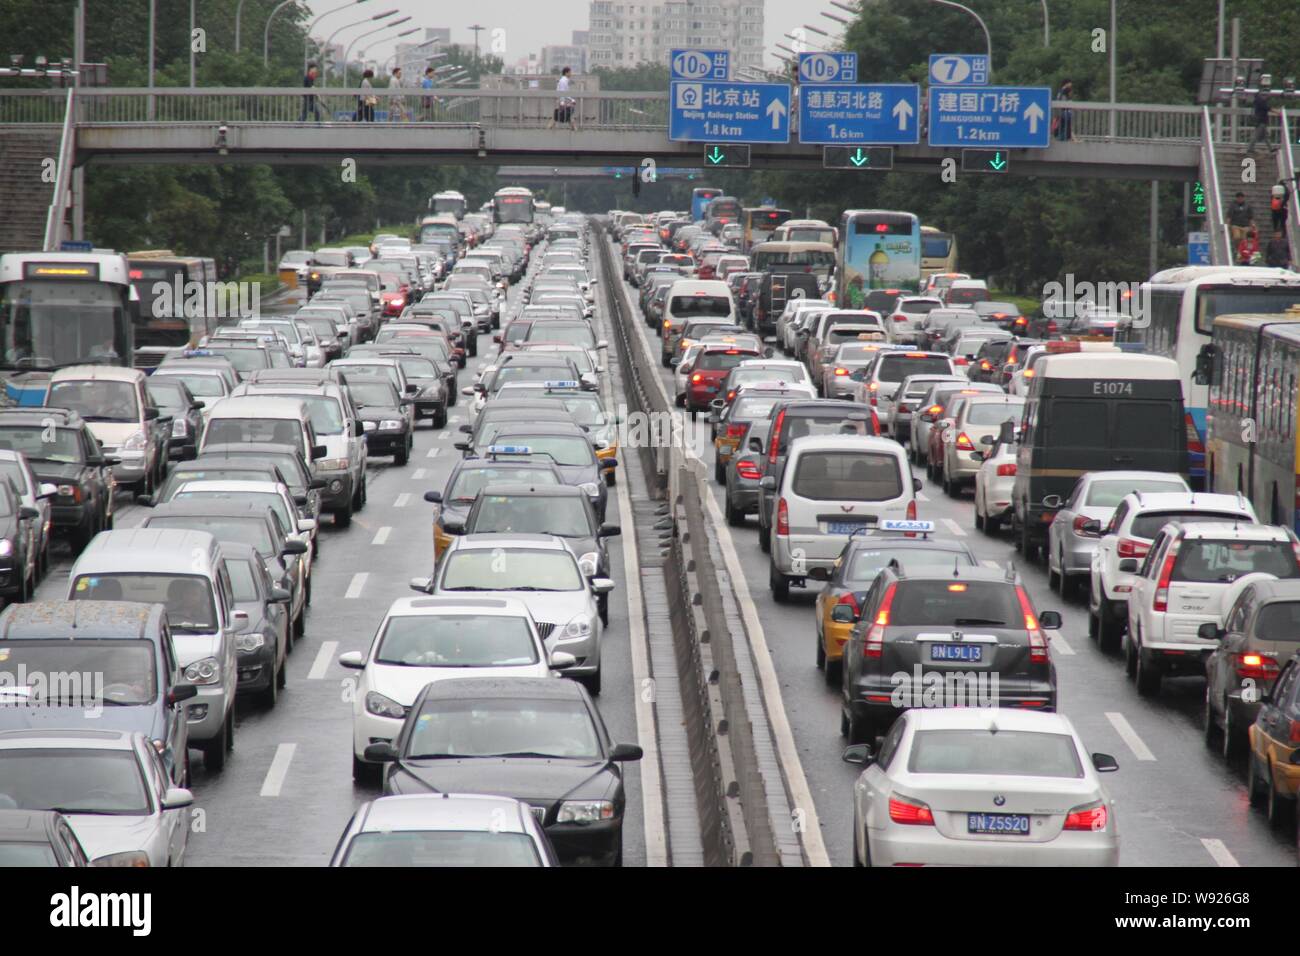 ---- Massen von Autos und Bussen bewegen Sie langsam im Stau auf einer Straße in Peking, China, 9. Juni 2013. Auf den Spuren von größeren Metropoliten Stockfoto